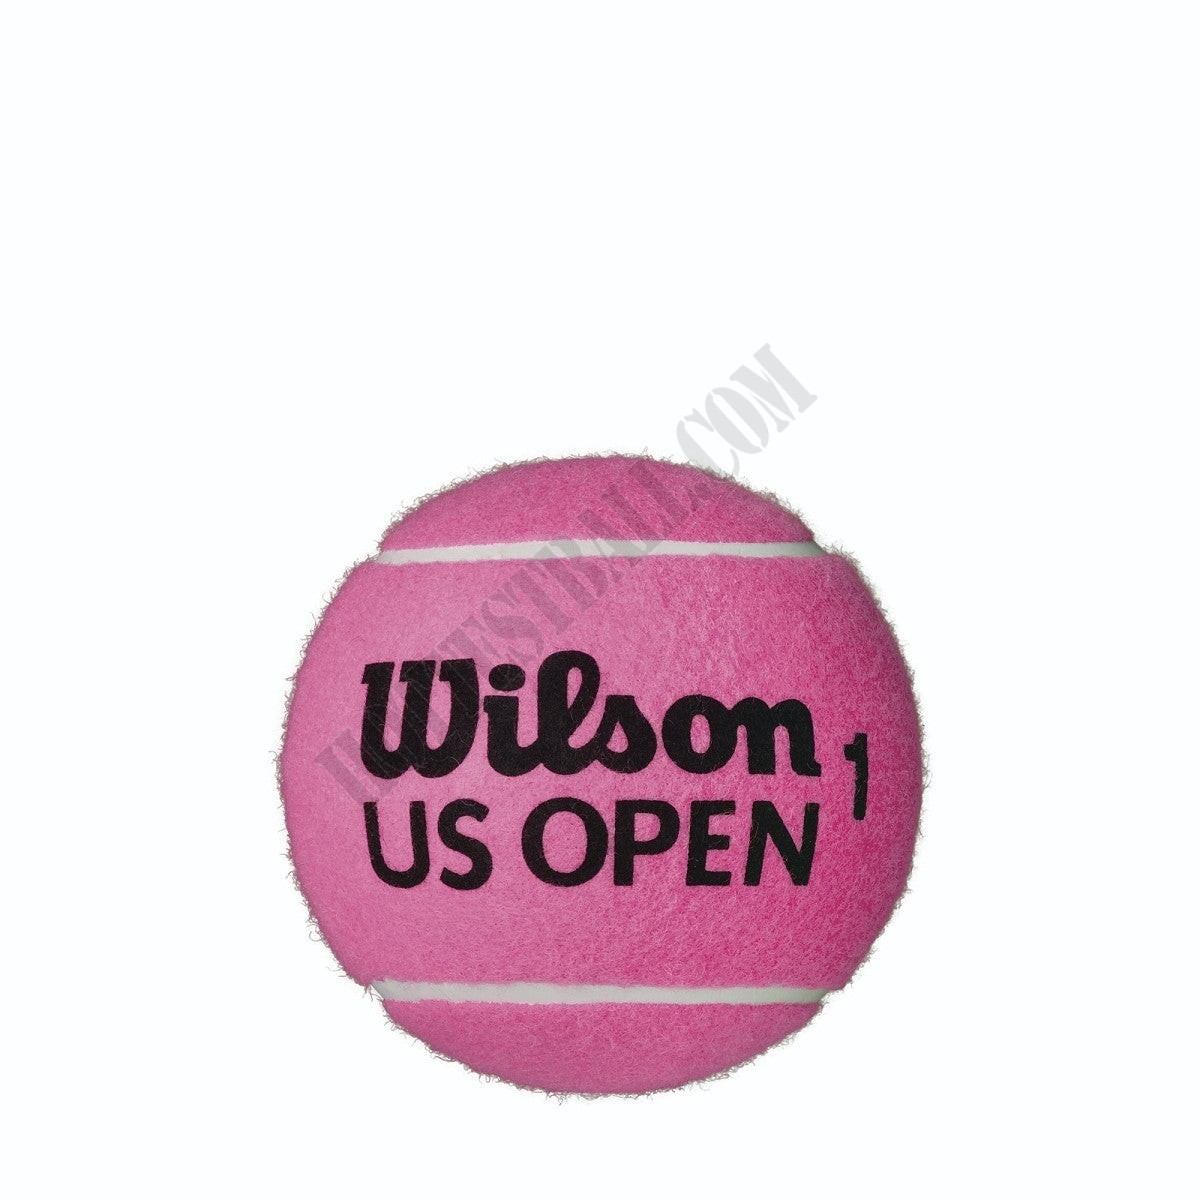 US Open Mini Jumbo Pink 5" Tennis Ball - Wilson Discount Store - US Open Mini Jumbo Pink 5" Tennis Ball - Wilson Discount Store